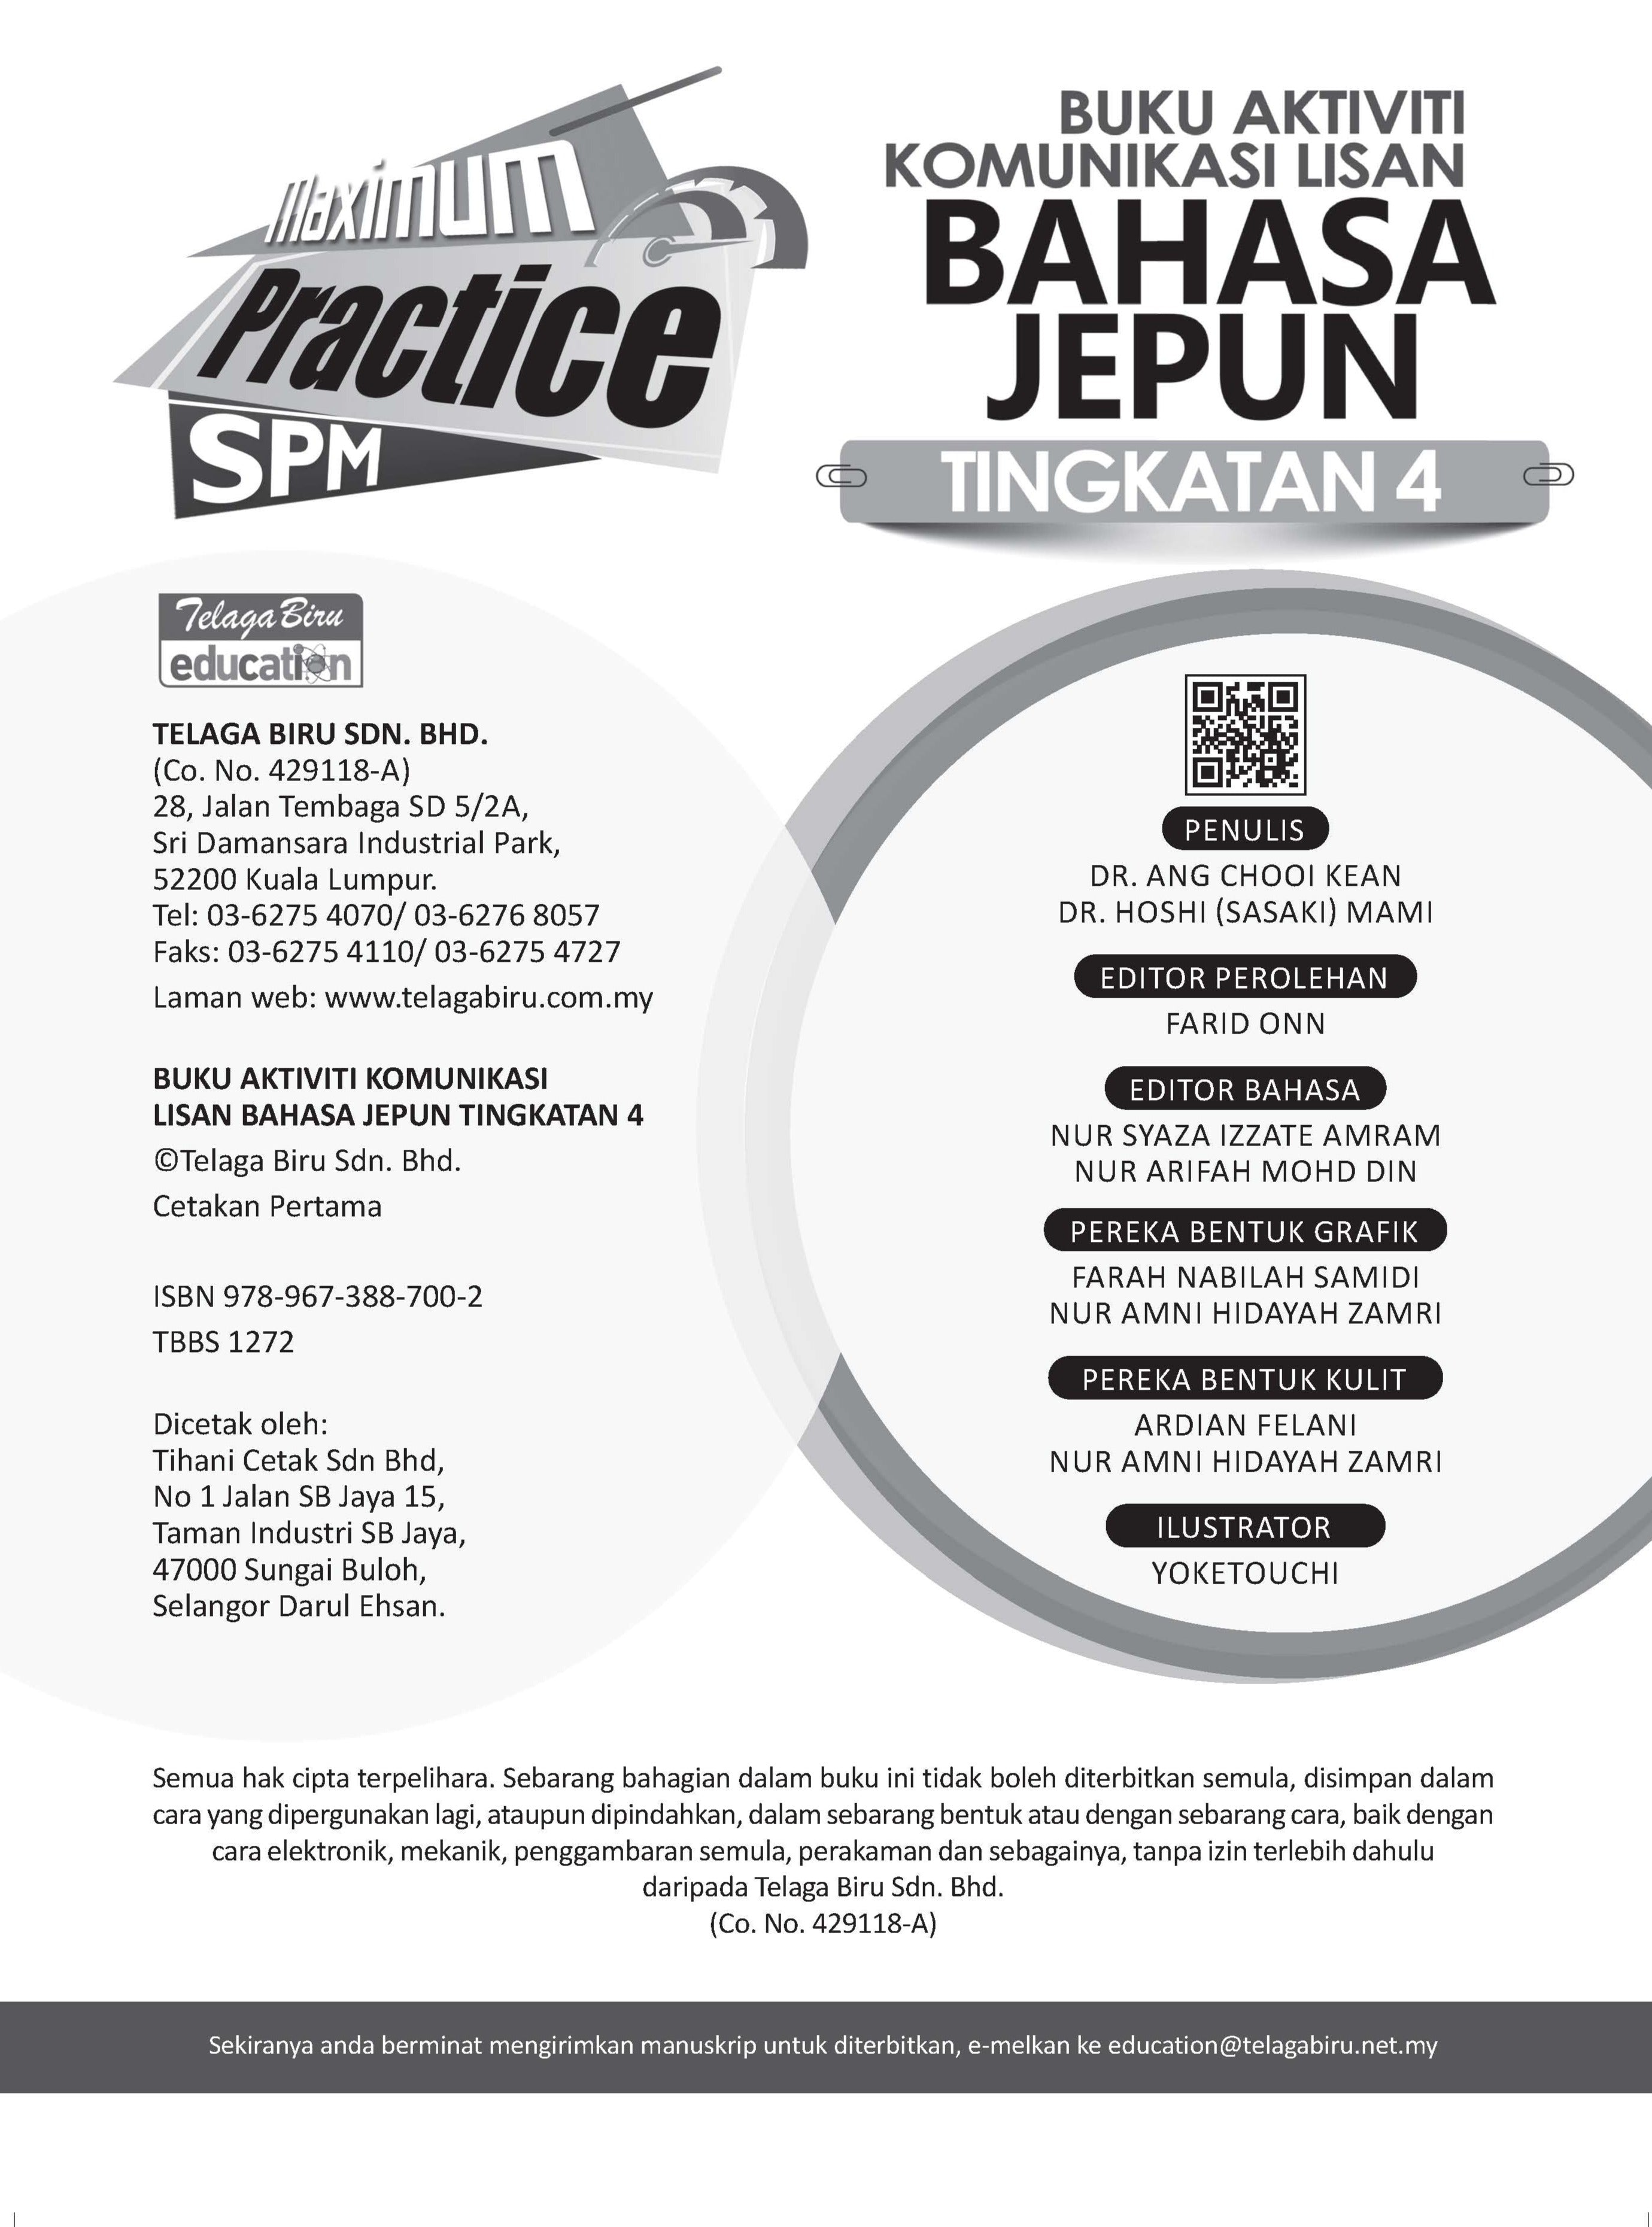 Maximum Practice SPM - Buku Aktiviti Komunikasi Lisan Bahasa Jepun Tingkatan 4 - (TBBS1272)